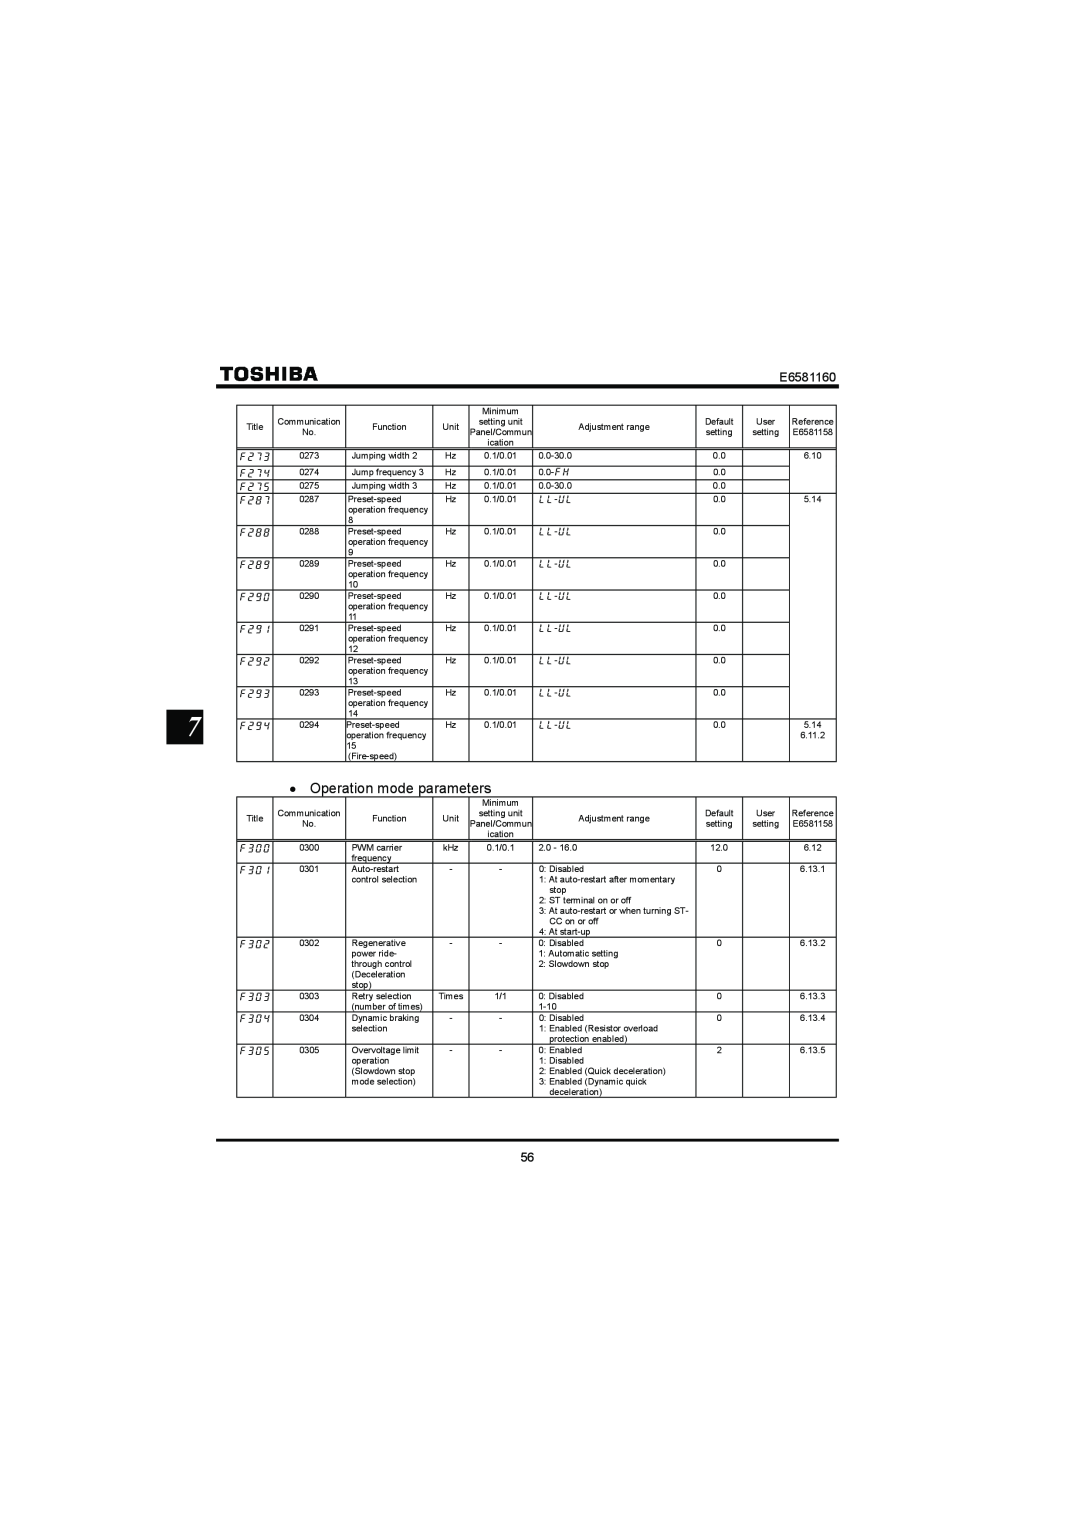 Toshiba VF-S11 manual Operation mode parameters, E6581160 